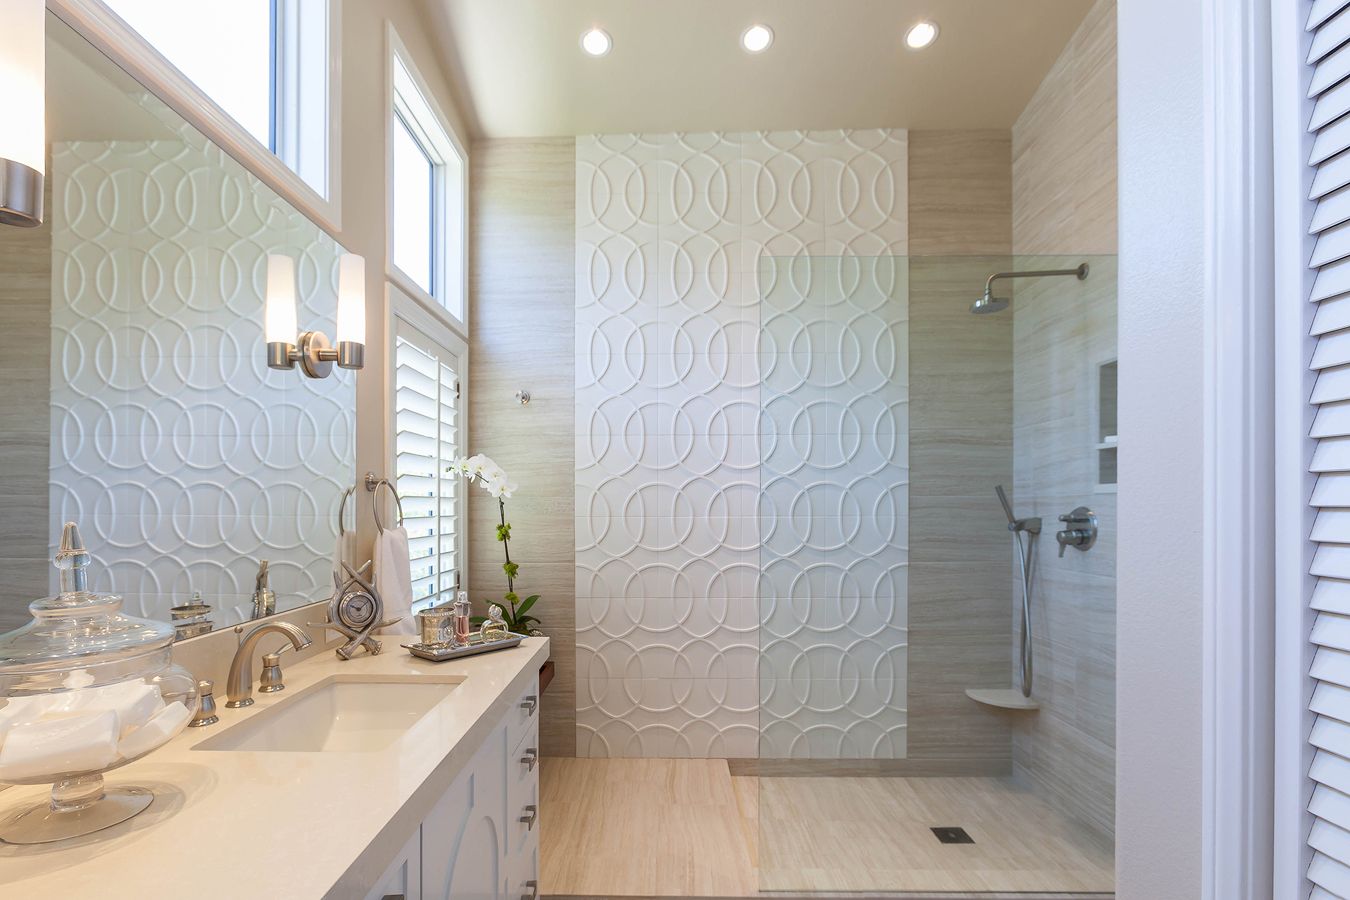 Walker Zanger Custom tile, custom wood vanity, European shower, modern design.